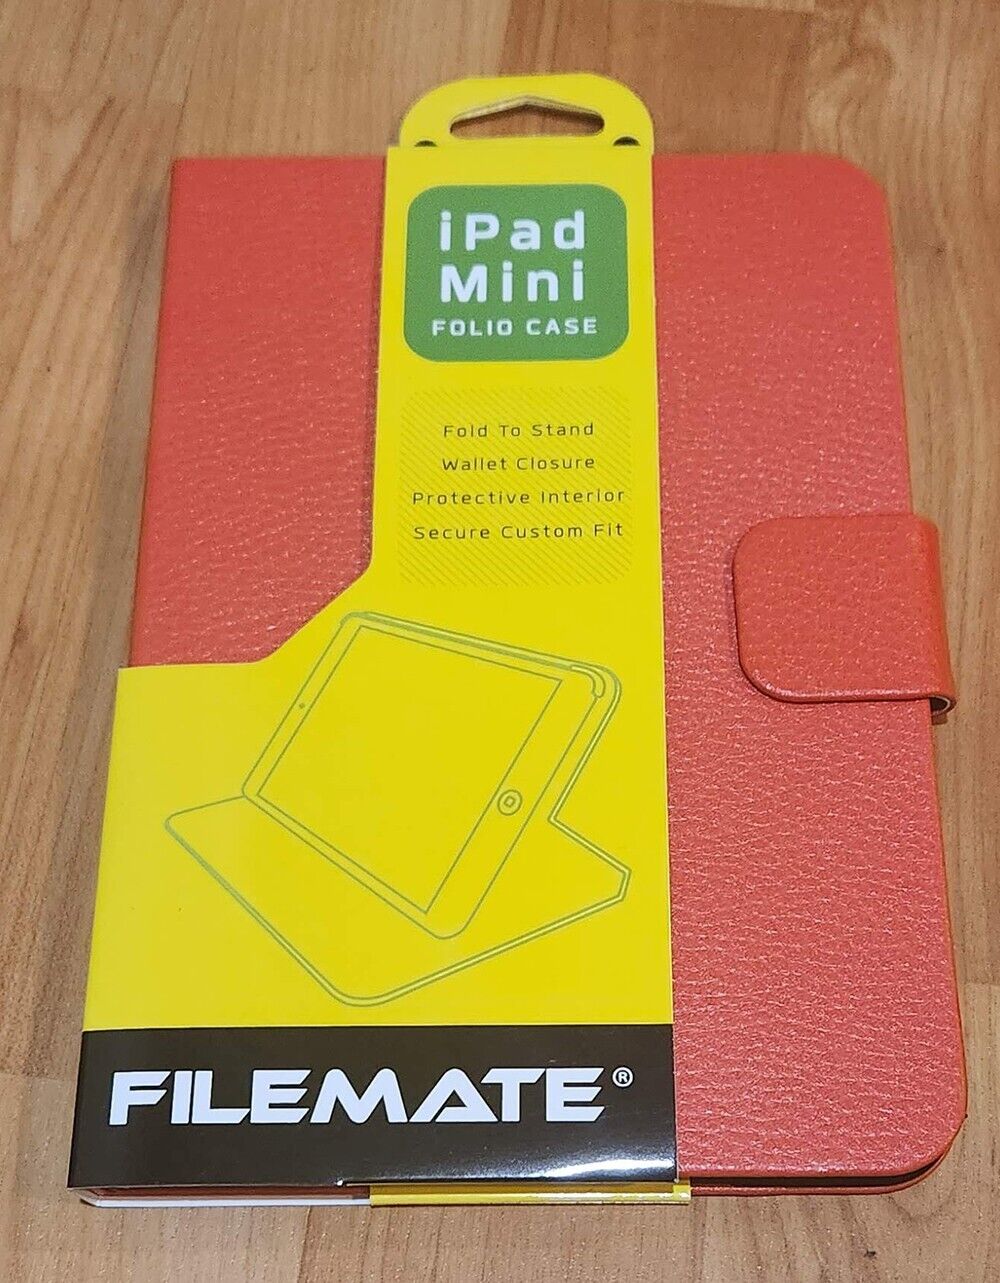 Filemate TC500 Apple IPad Mini Folio Case Fold To Stand Protective Secure